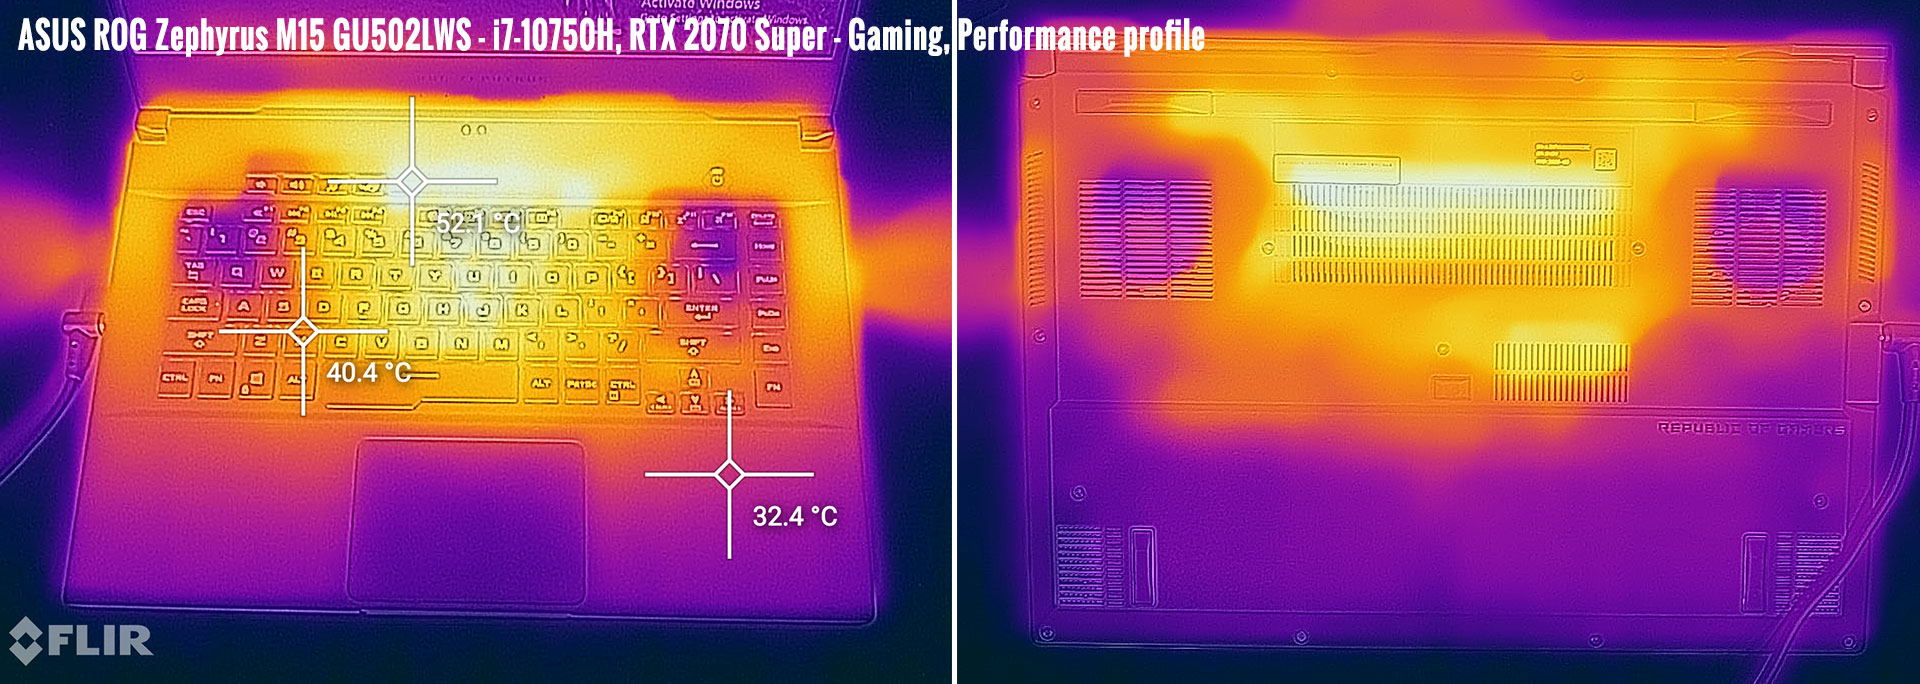 temperatures zephyrus m15 gaming performance